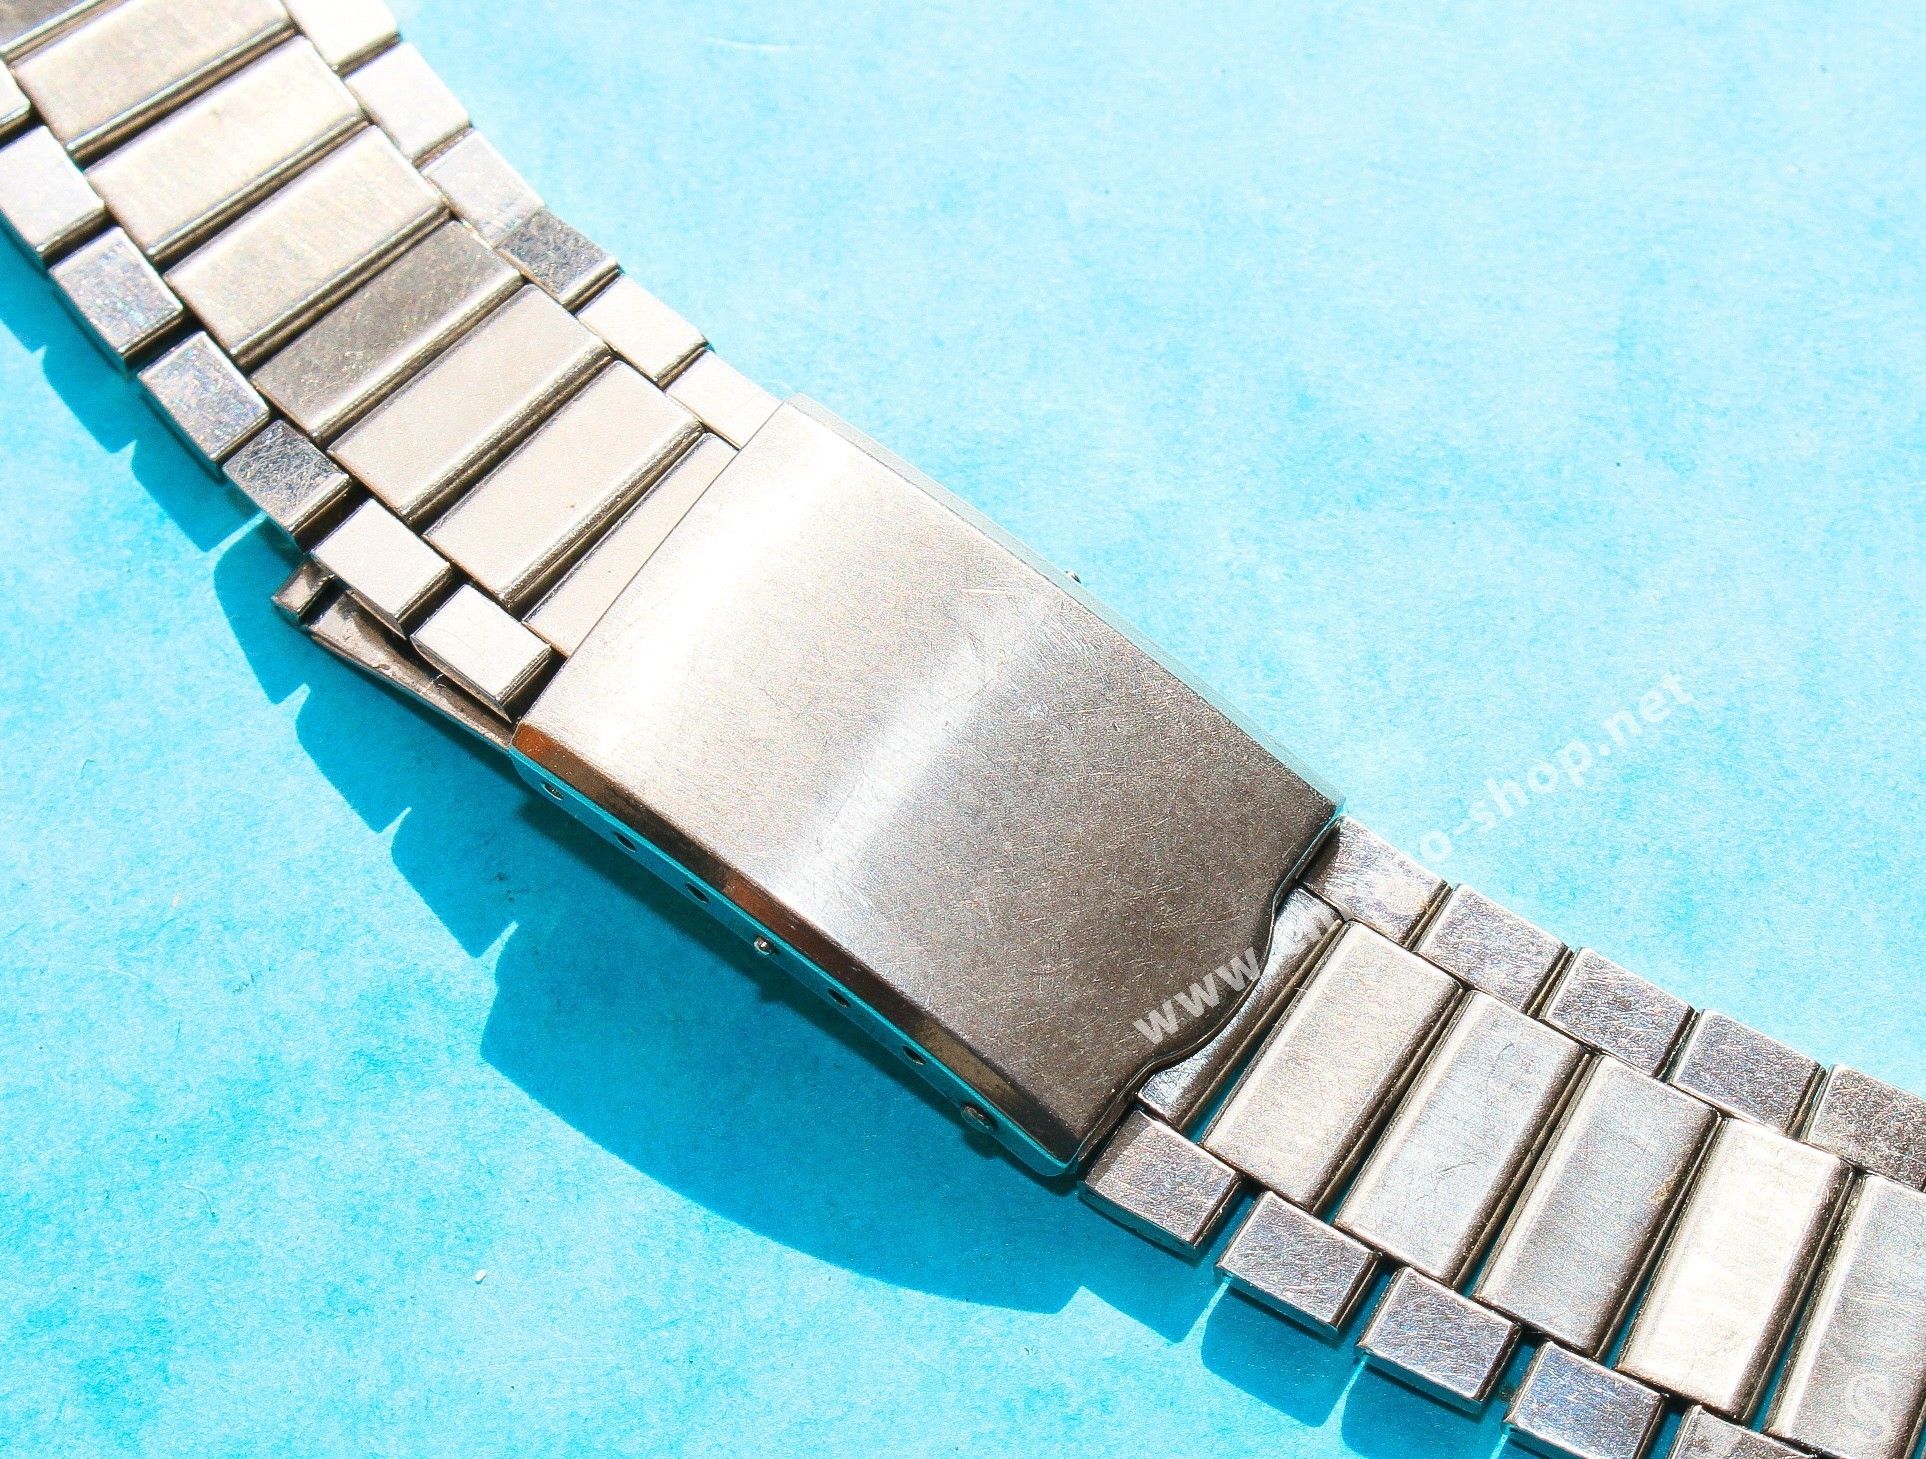 omega speedmaster bracelet links